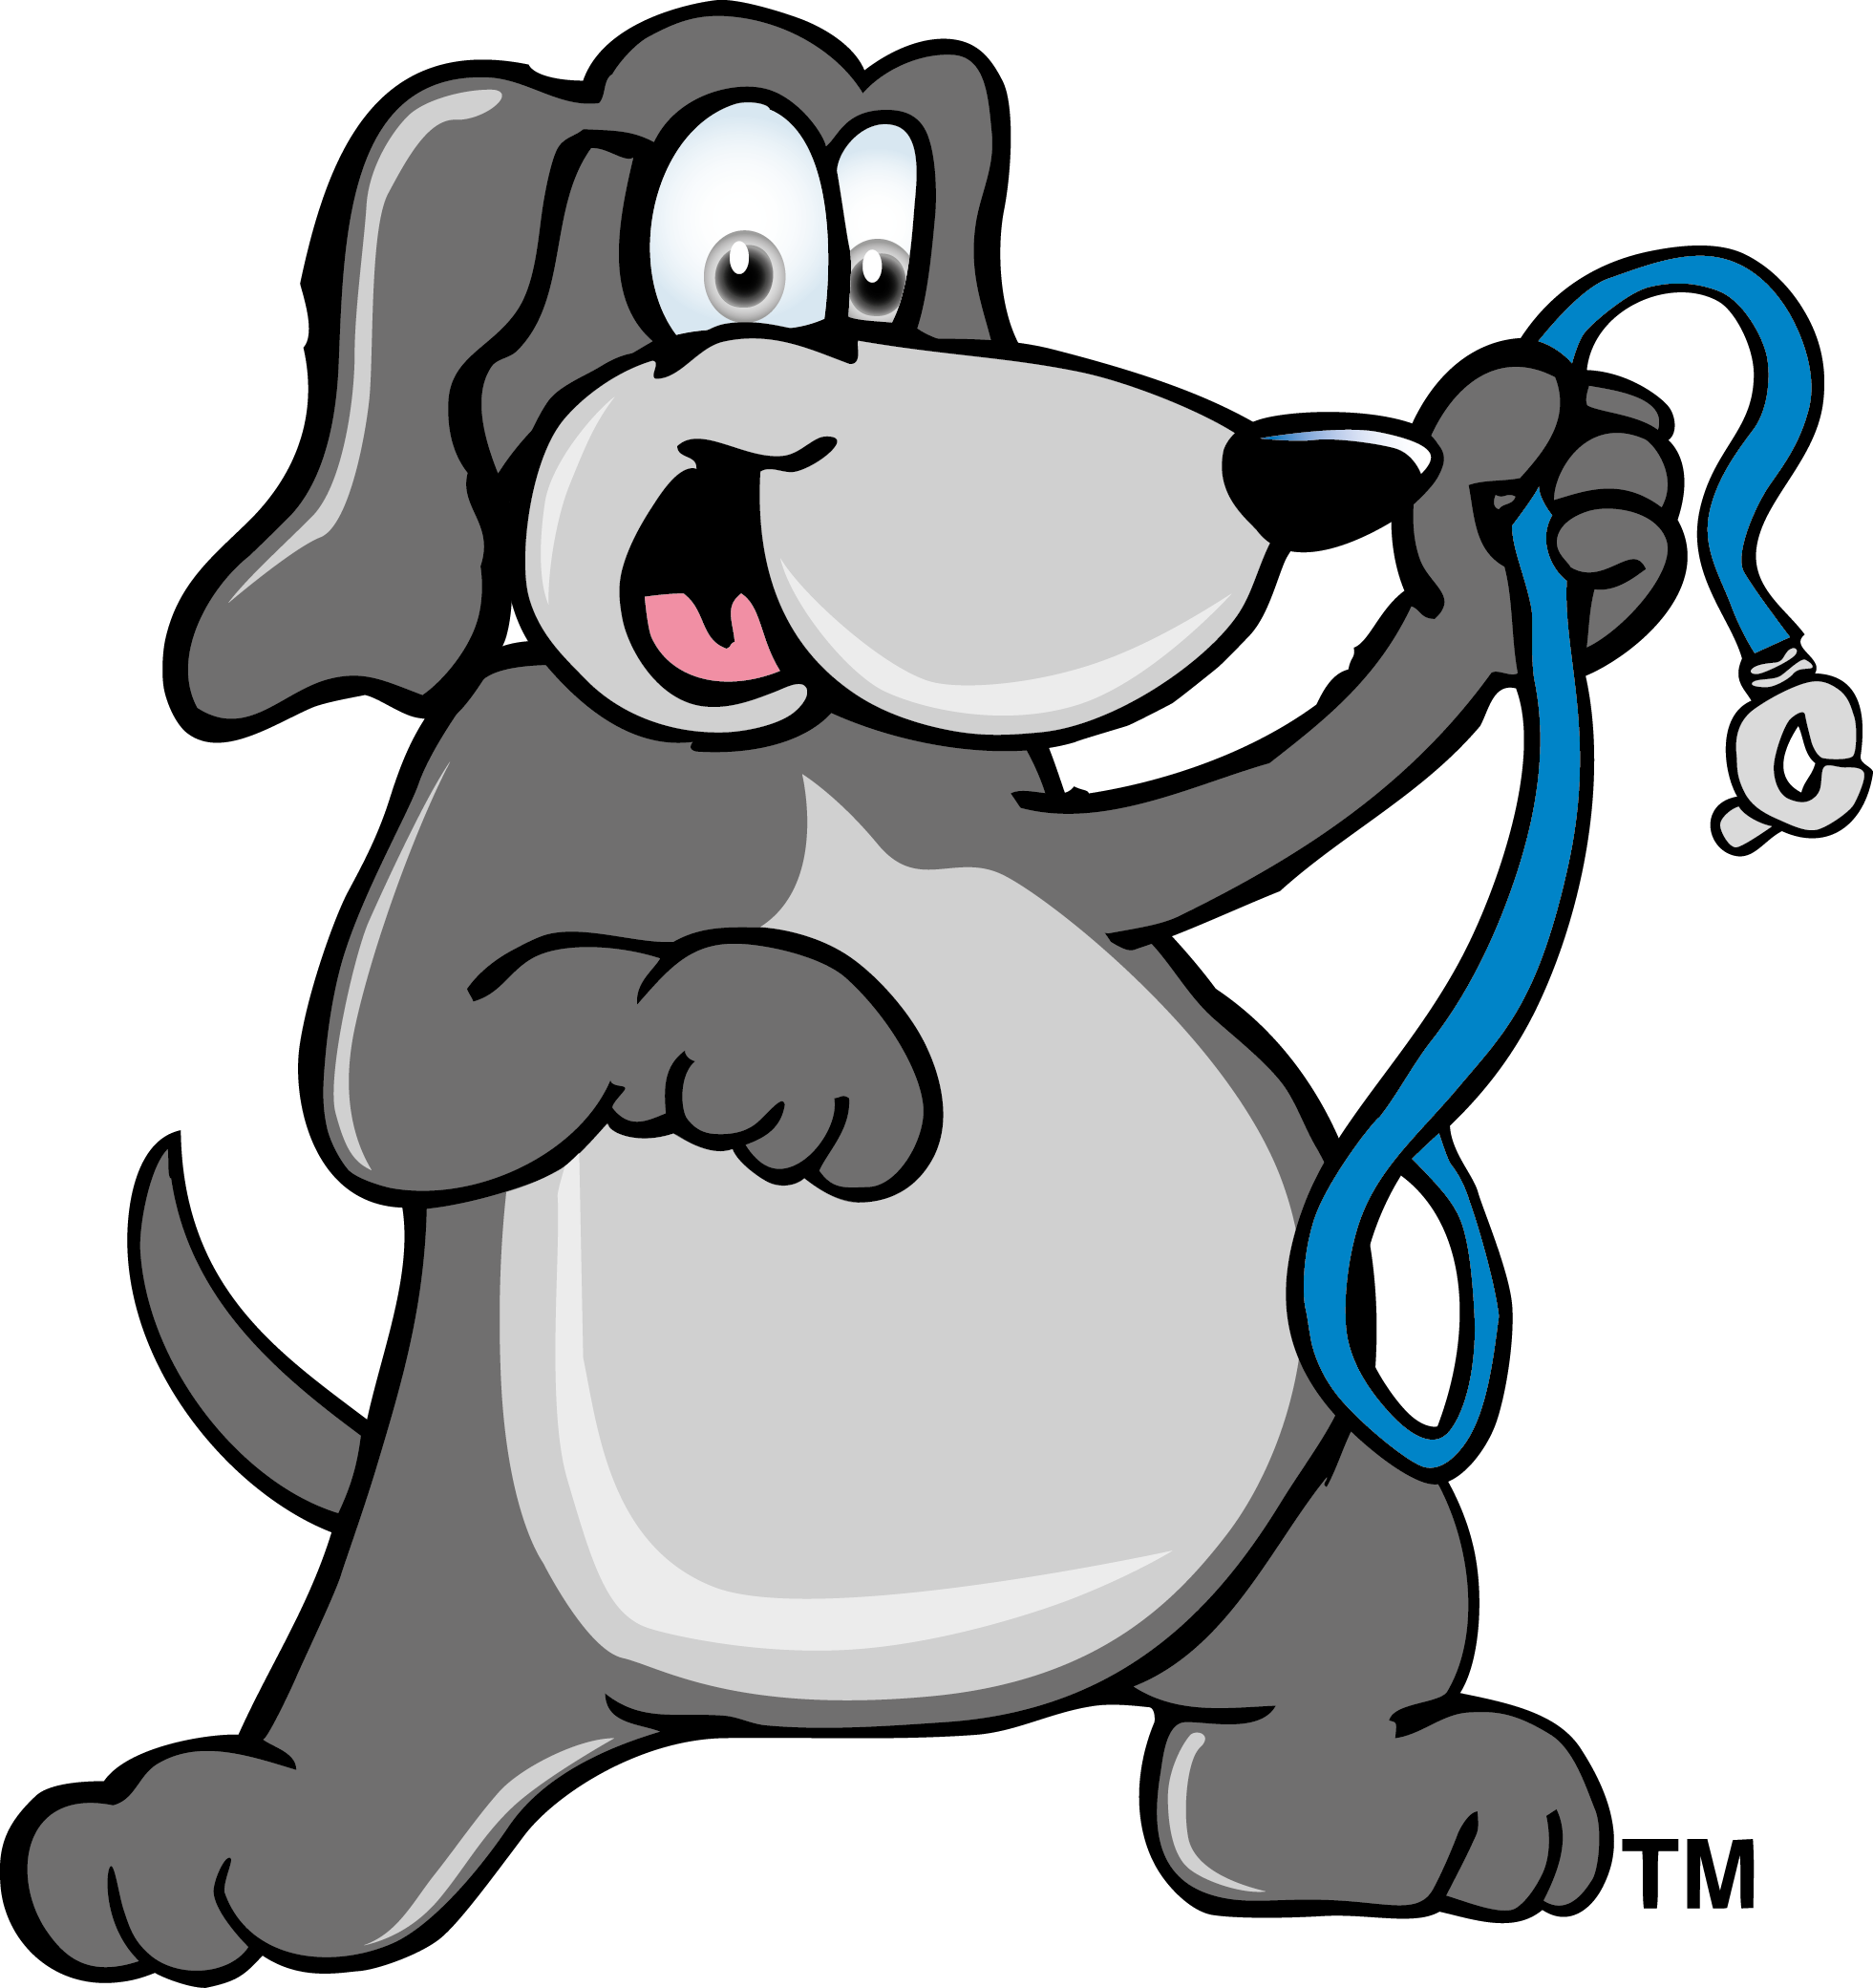 Fat Dog With A Leash - Dog Walking Cartoon (1961x2081)